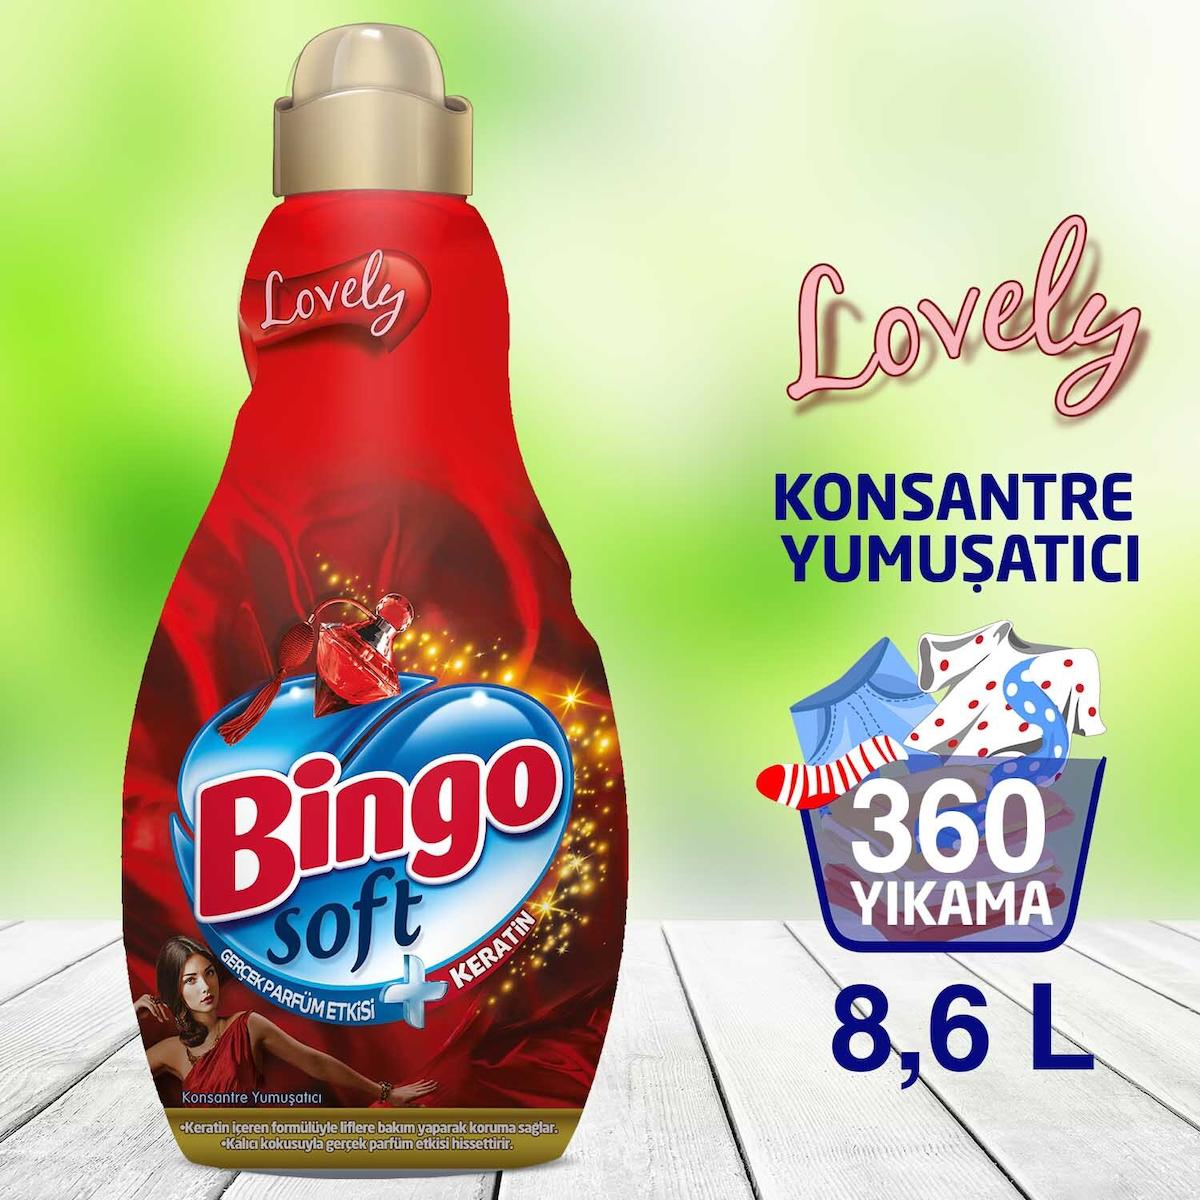 Bingo Soft Lovely 60 Yıkama Yumuşatıcı 6x1.44 lt